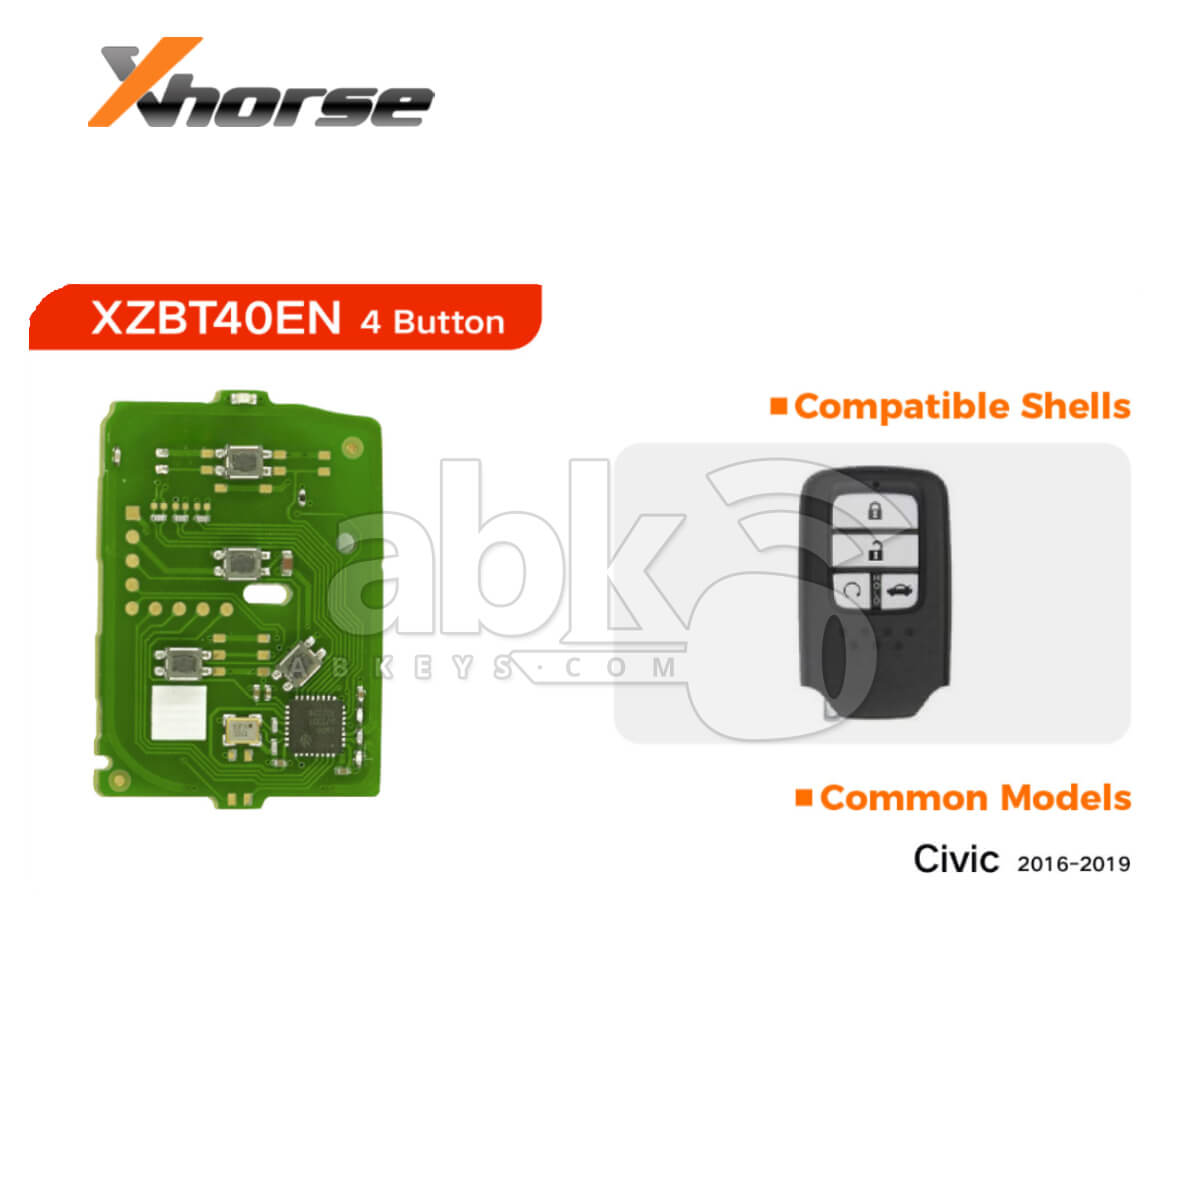 Xhorse Universal Smart Key PCB XZBT40EN Honda Style 4Buttons - ABK-4488-XZBT40EN - ABKEYS.COM